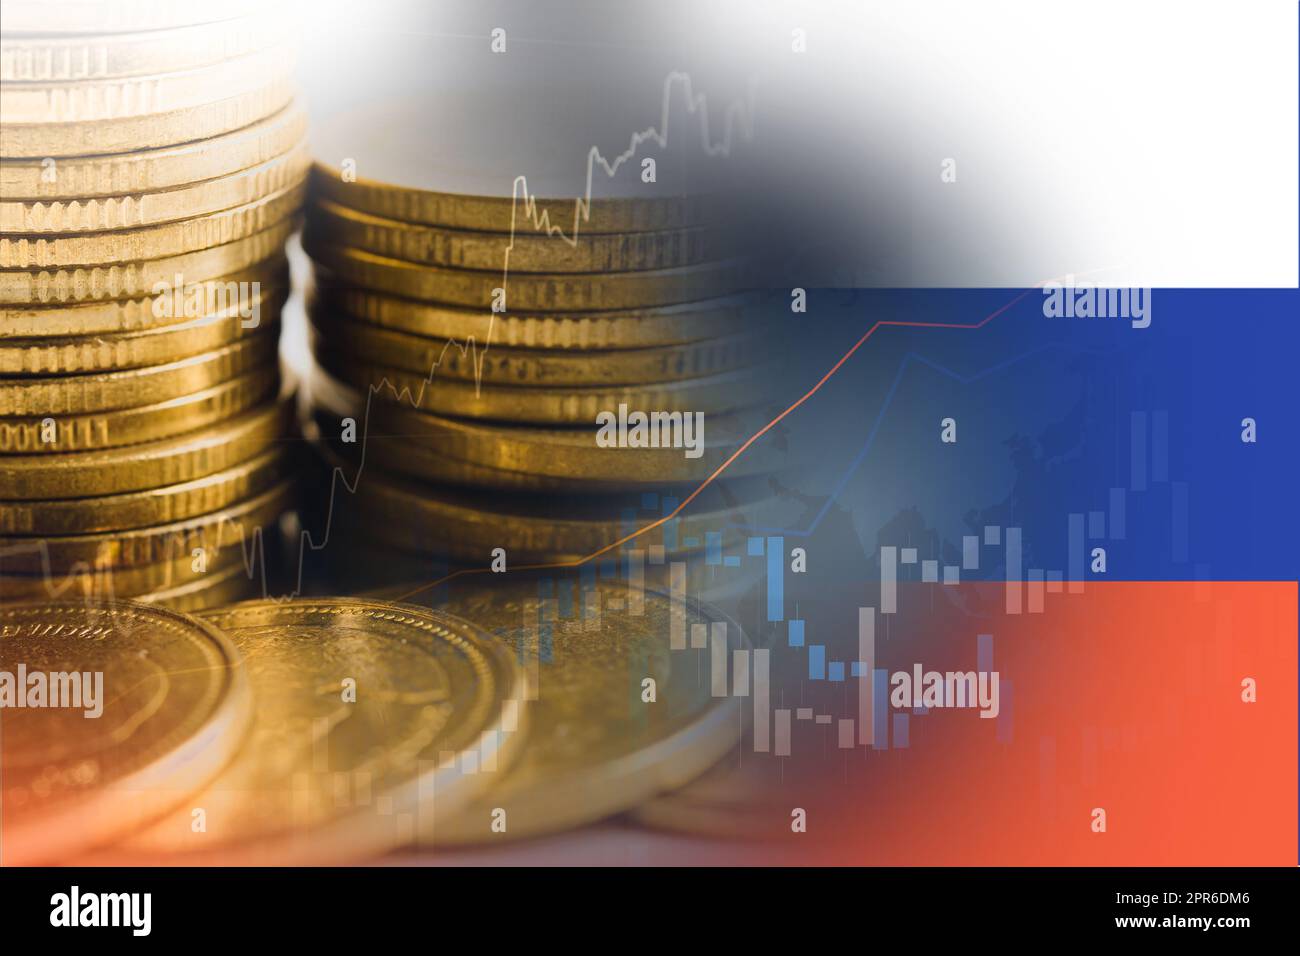 Bourse investissement trading financier, de la monnaie et de Russie drapeau ou Forex pour analyser le financement de bénéfice tendances d'affaires fond de données. Banque D'Images